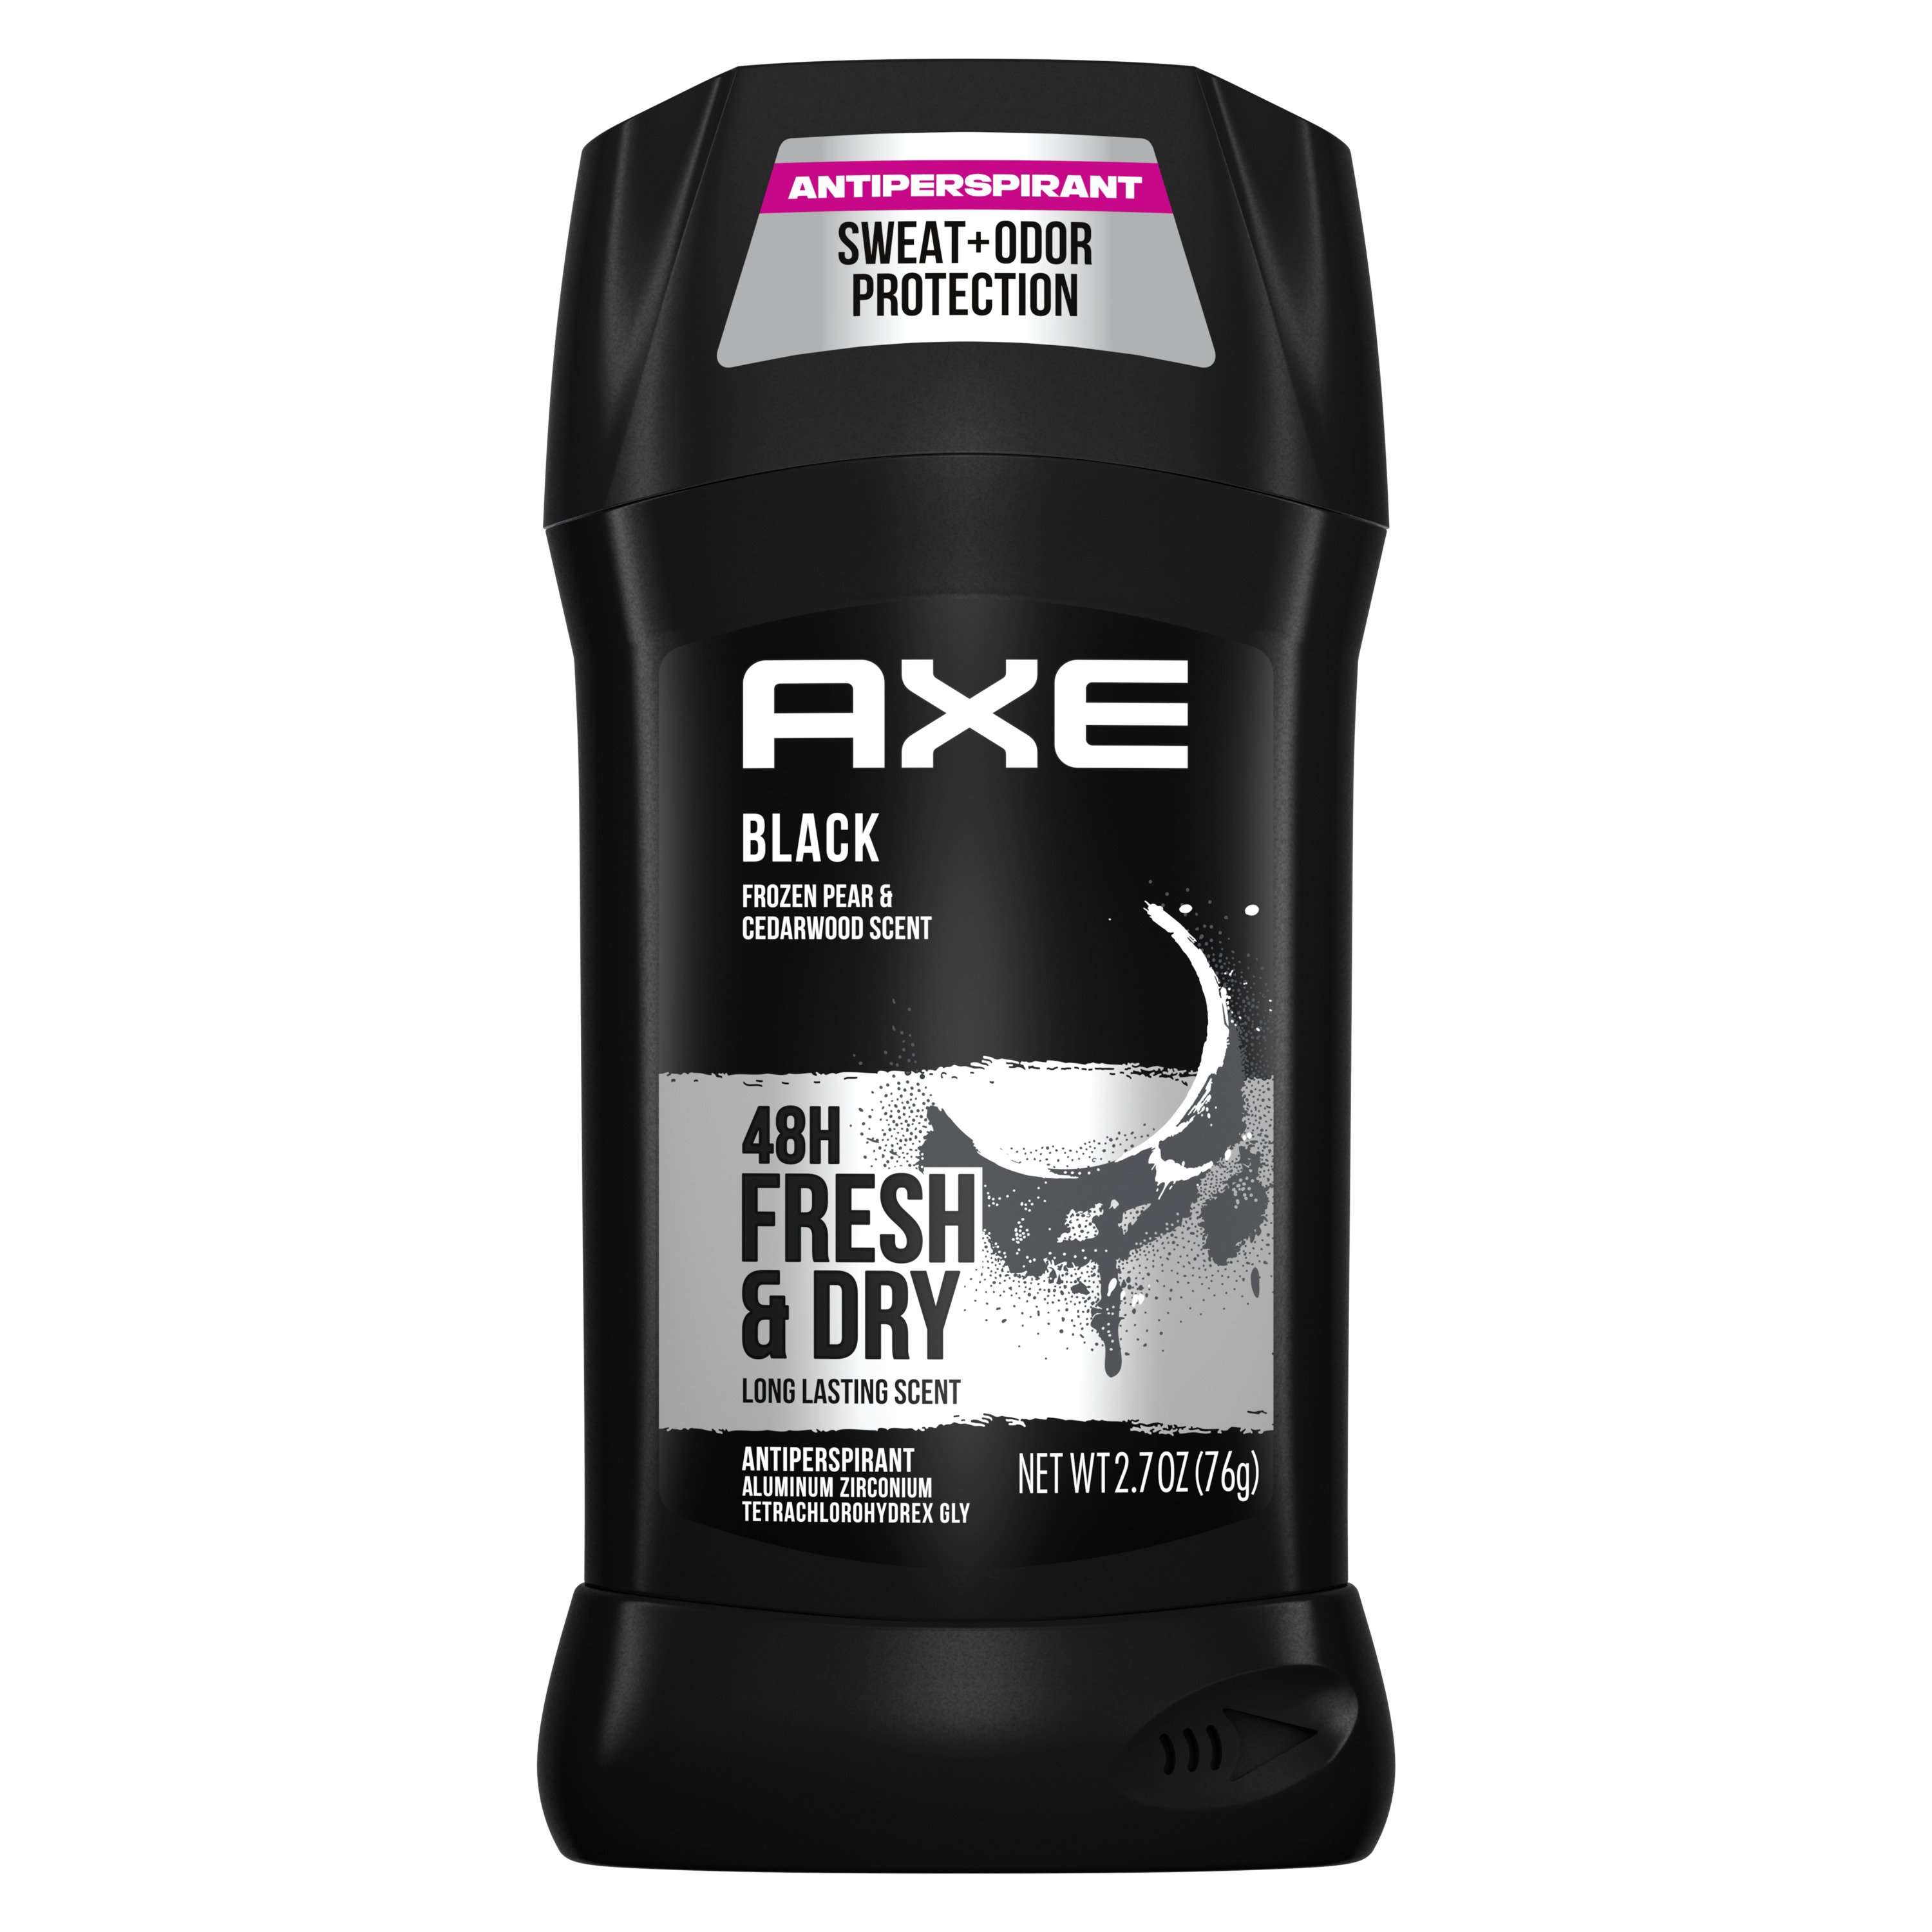 AXE Antiperspirant Stick for Men - Shop & Antiperspirant at H-E-B